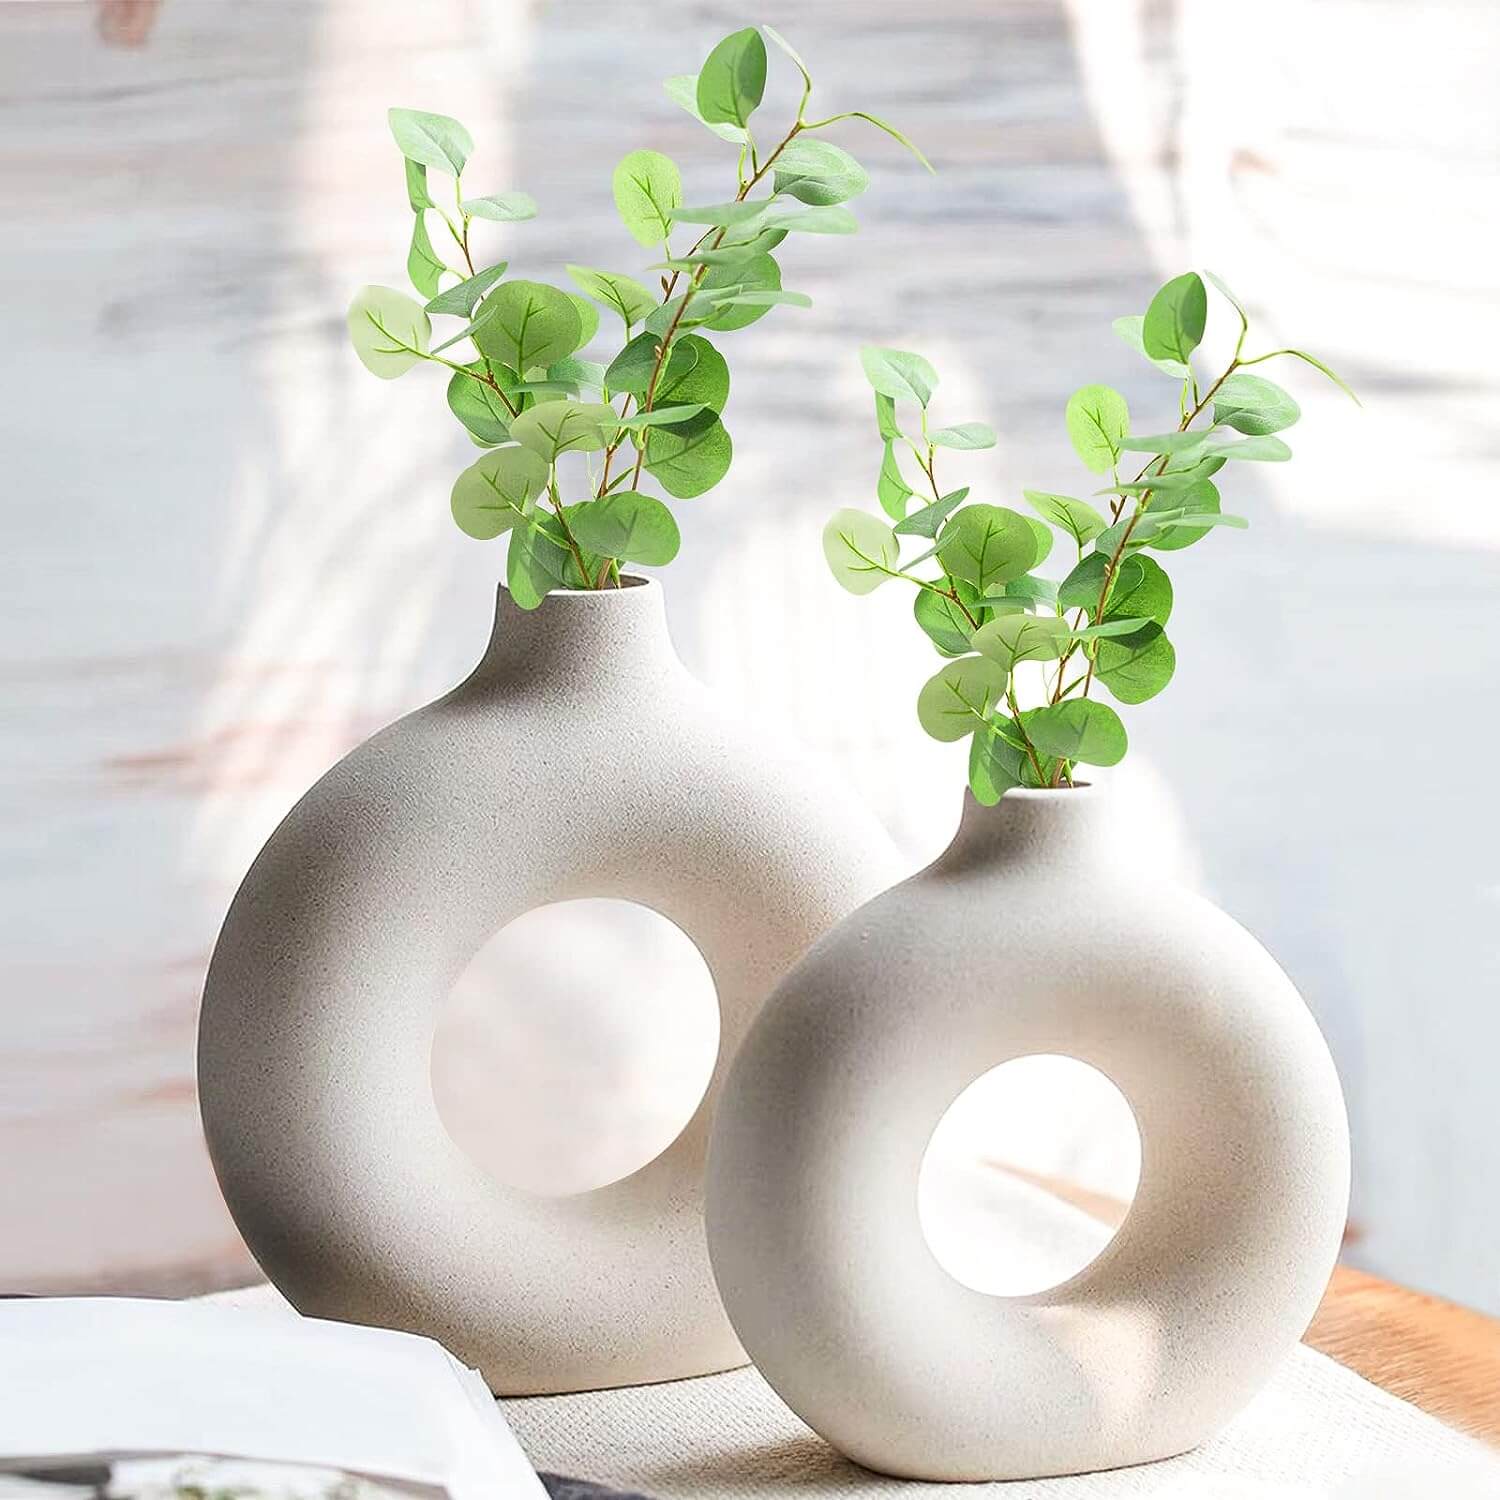 Zestaw okrągłych białych wazonów w stylu boho — trend z Pinteresta. Wazon do pampasów i suszek